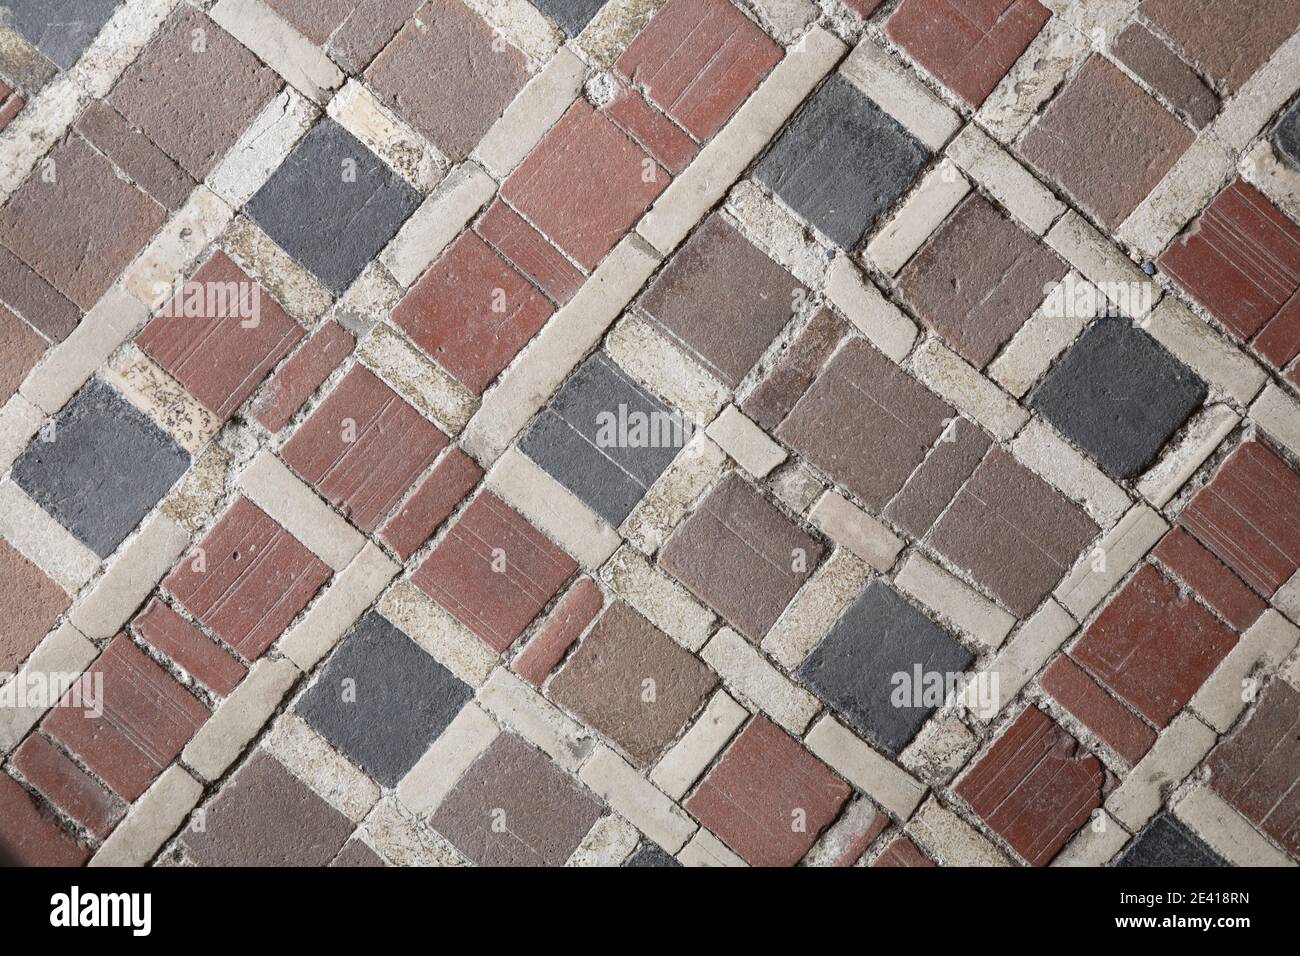 Fußboden mit alten Mosaiksteinen Foto Stock